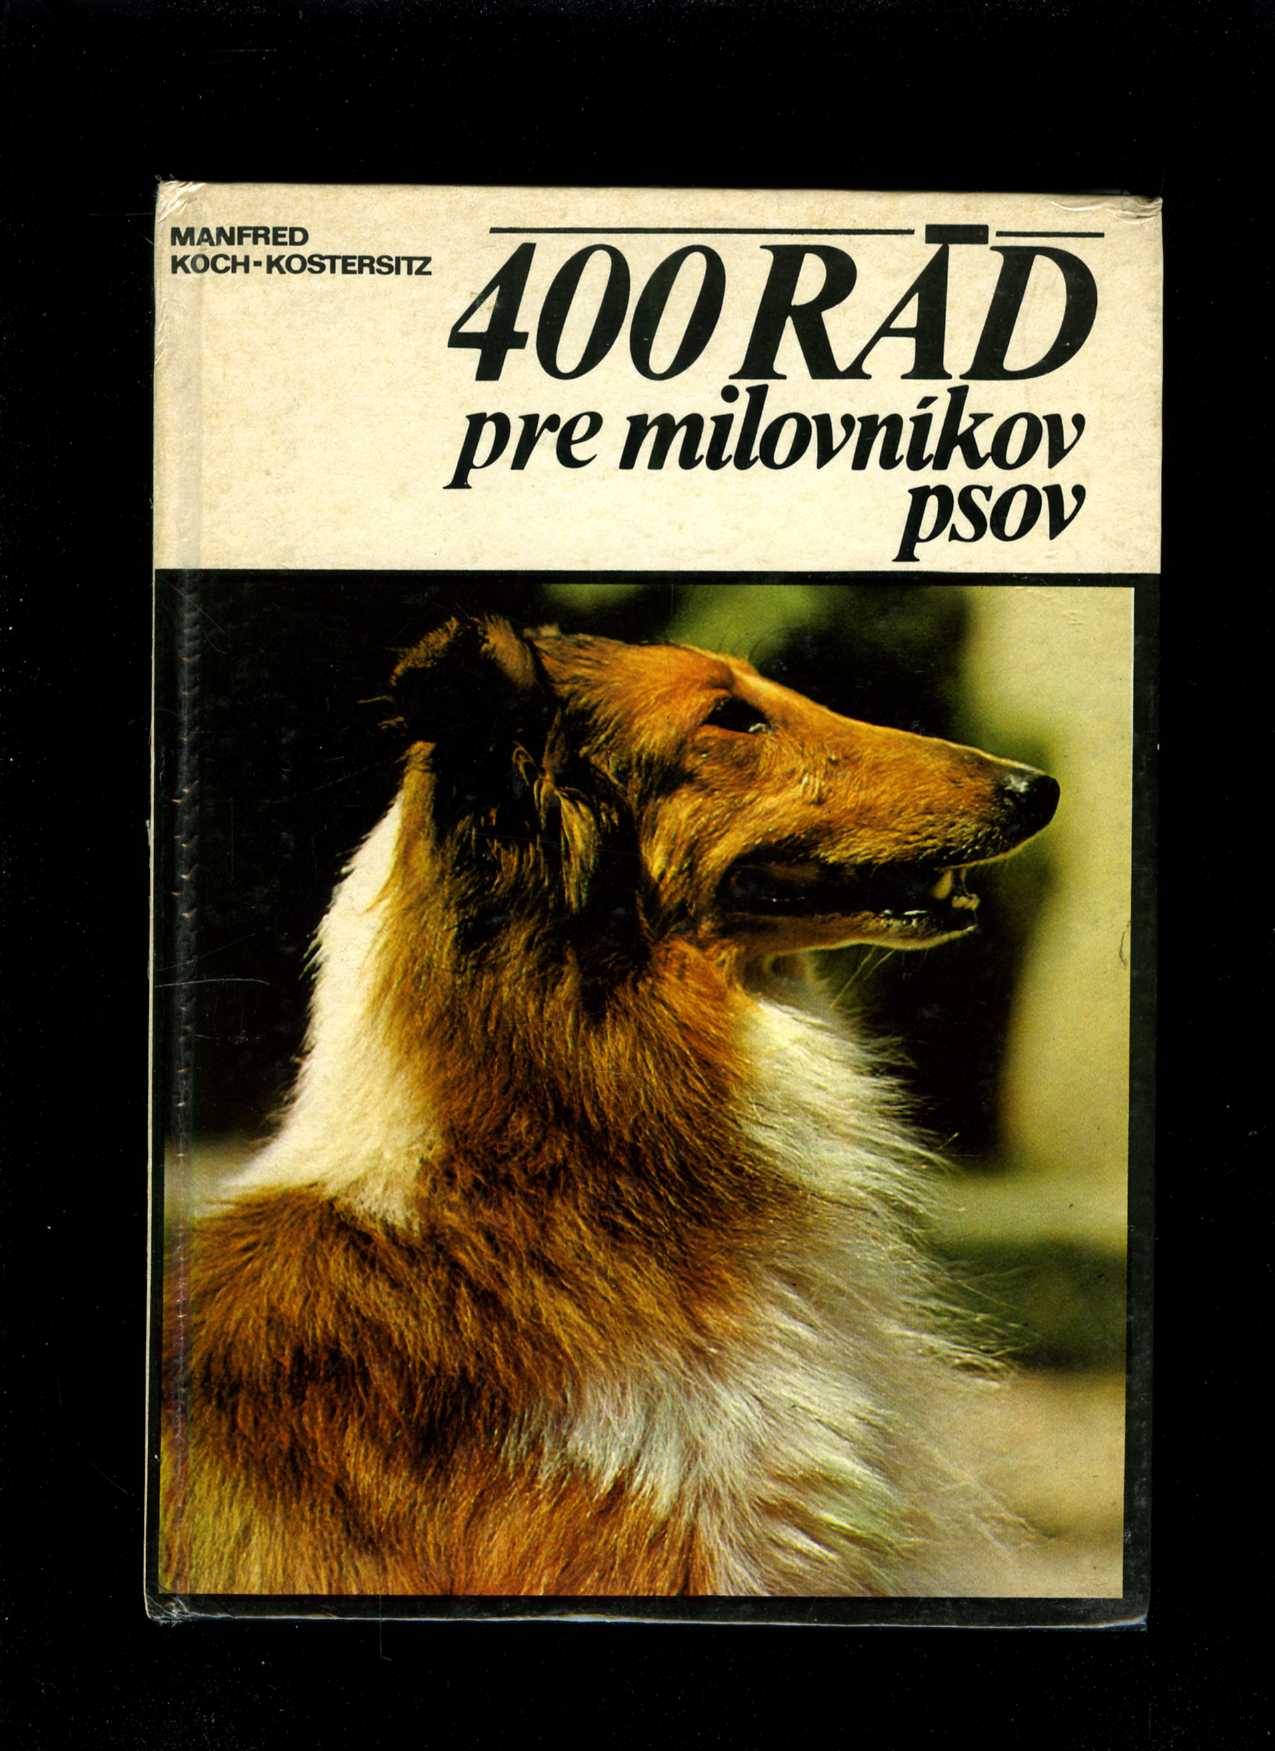 400 rád pre milovníkov psov (Manfred Koch-Kostersitz)